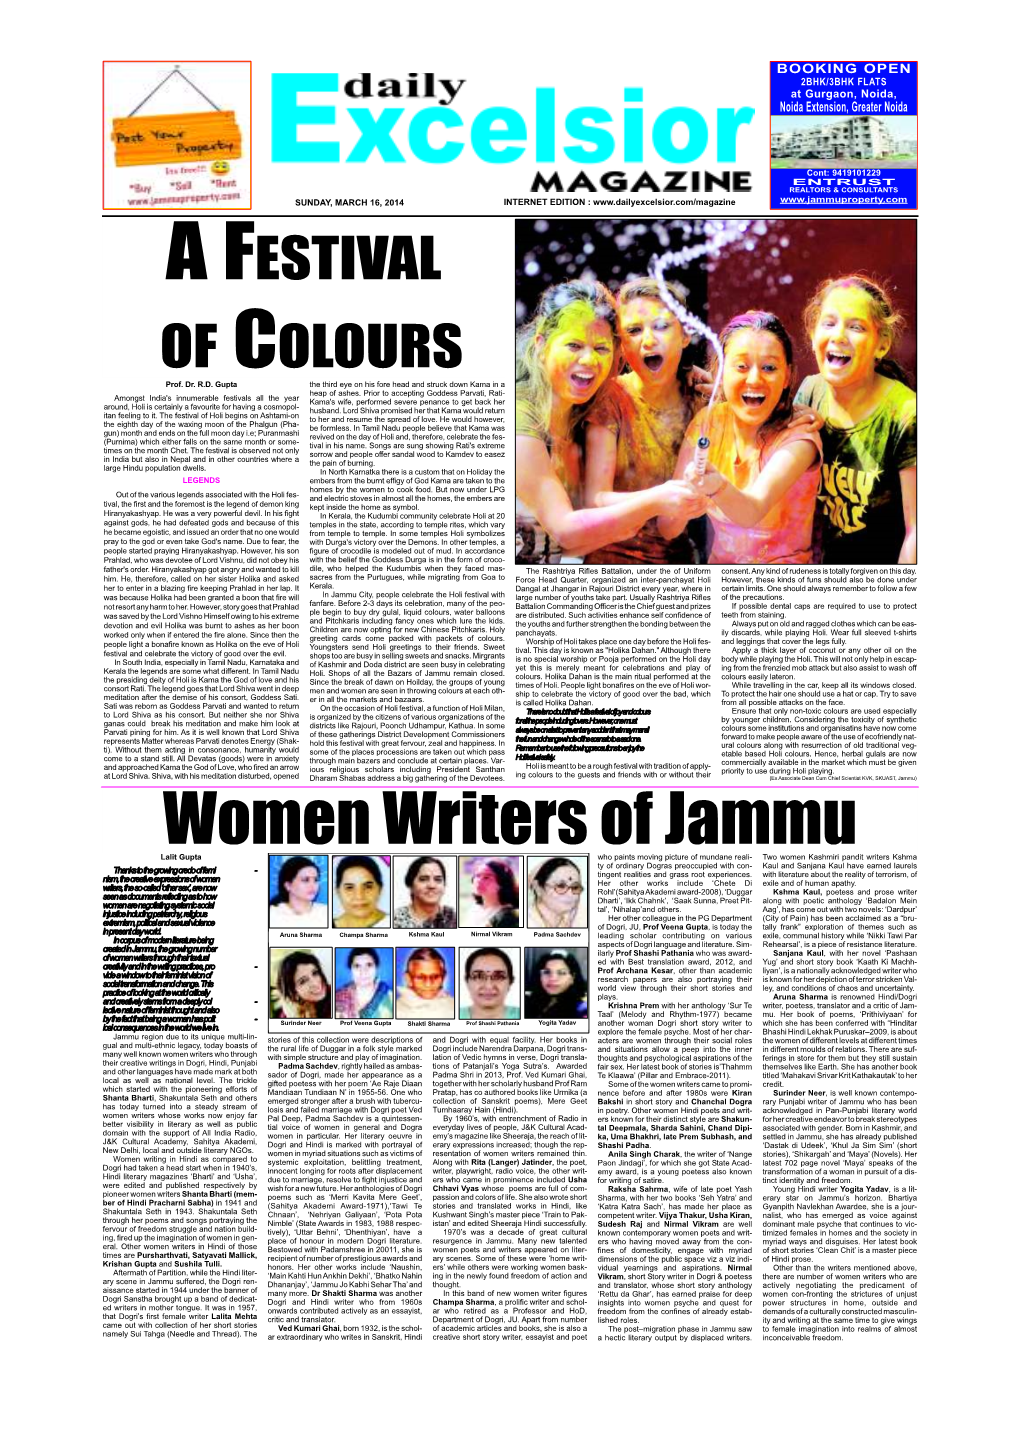 Women Writers of Jammu